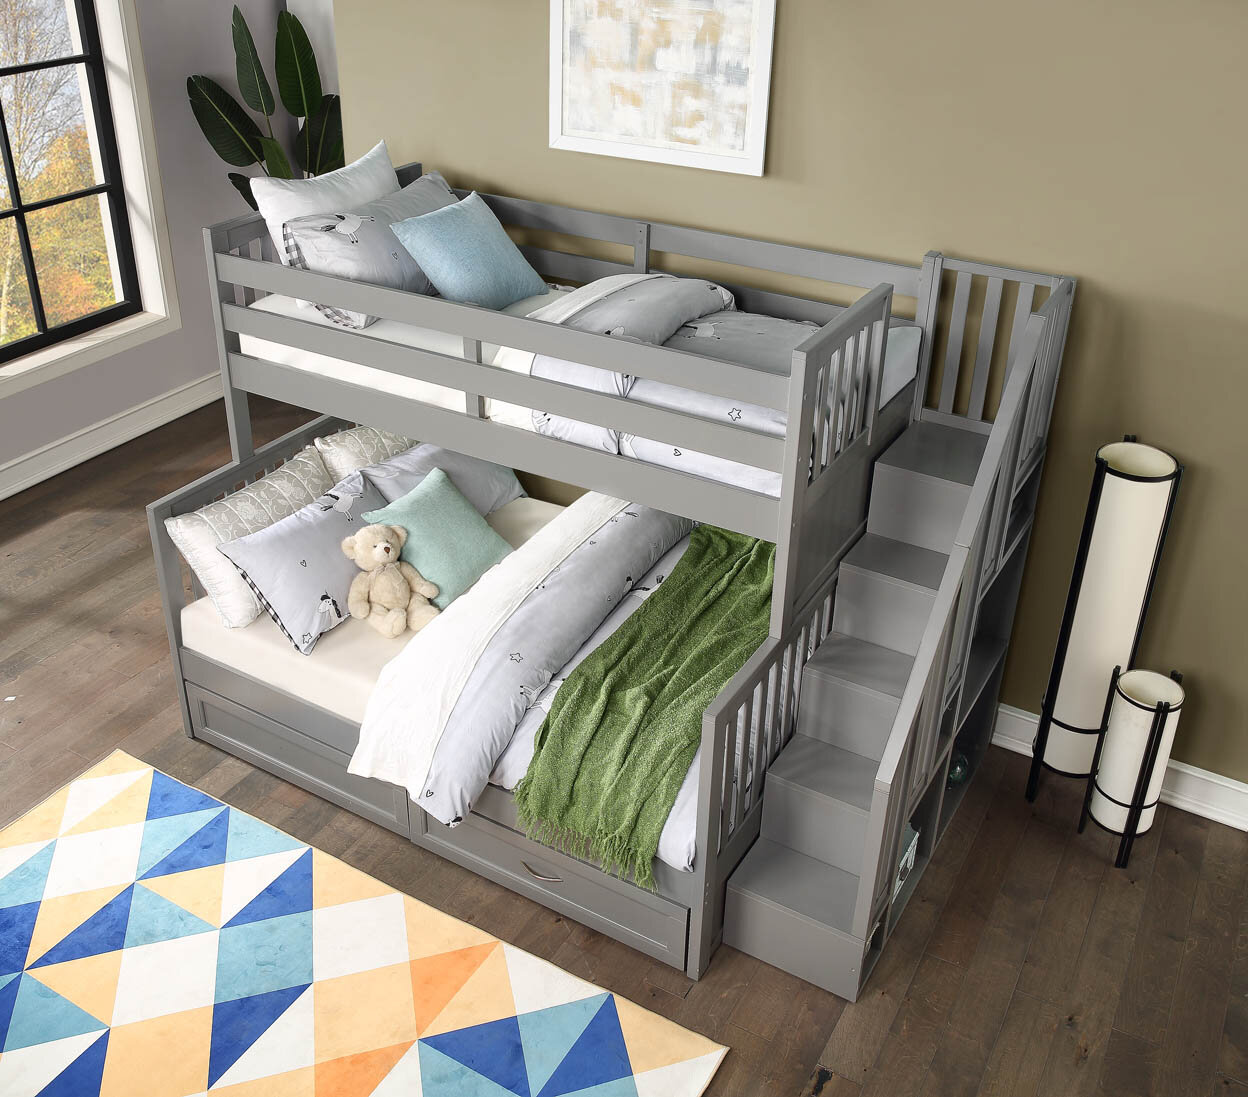 Caramia Furniture Bunk Beds, Caramia Bunk Beds